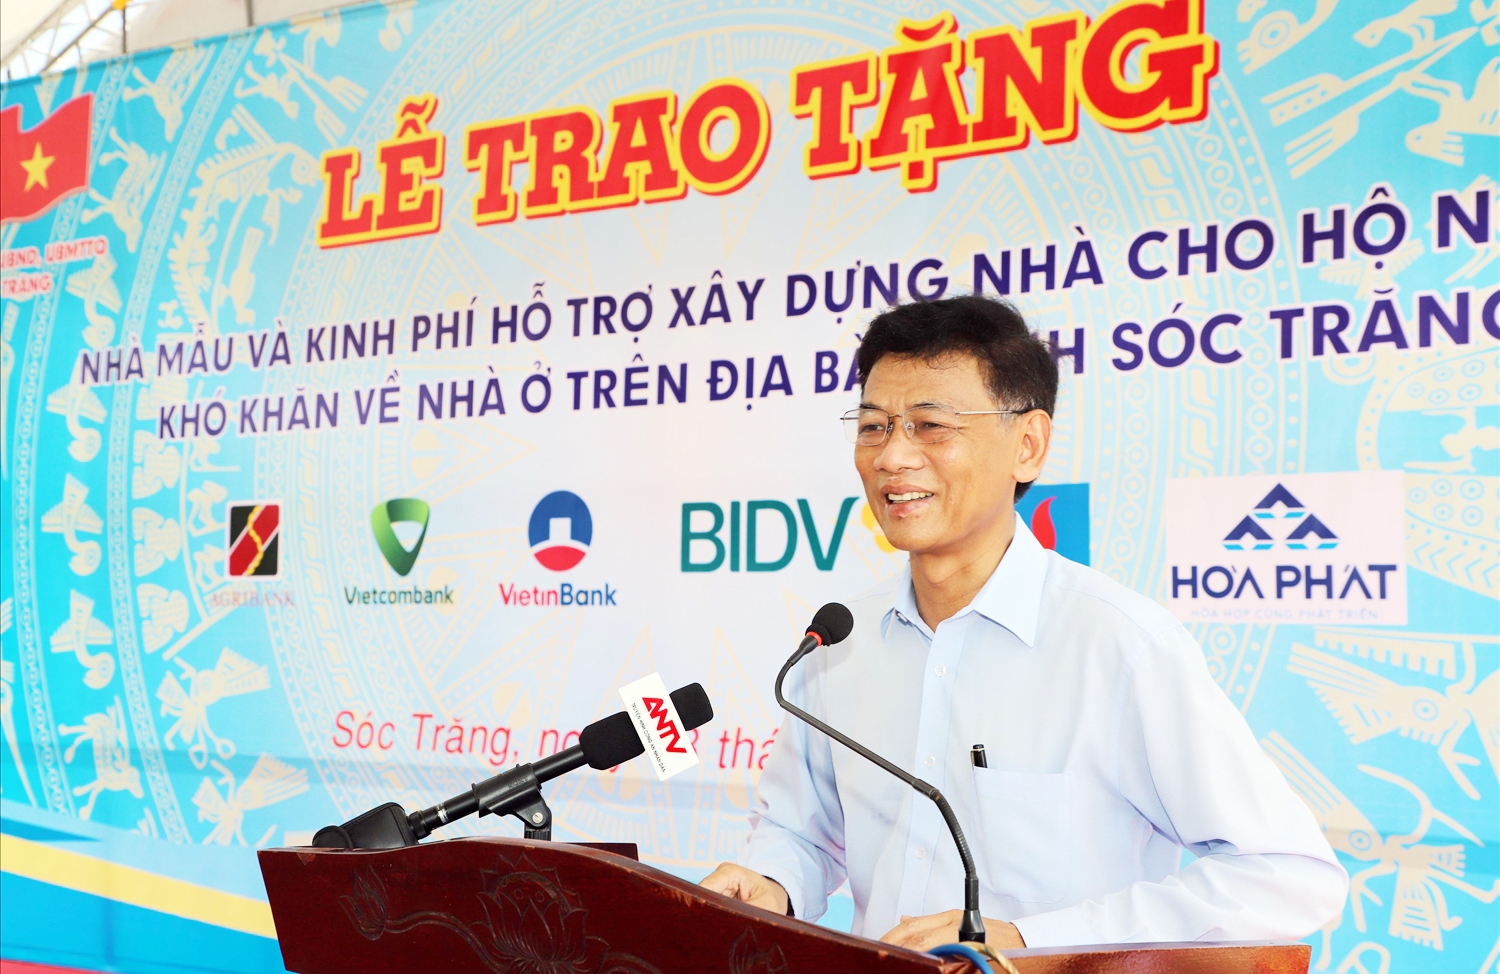 Ông Lâm Văn Mẫn - Bí thư Tỉnh ủy Sóc Trăng phát biểu tại buổi lễ